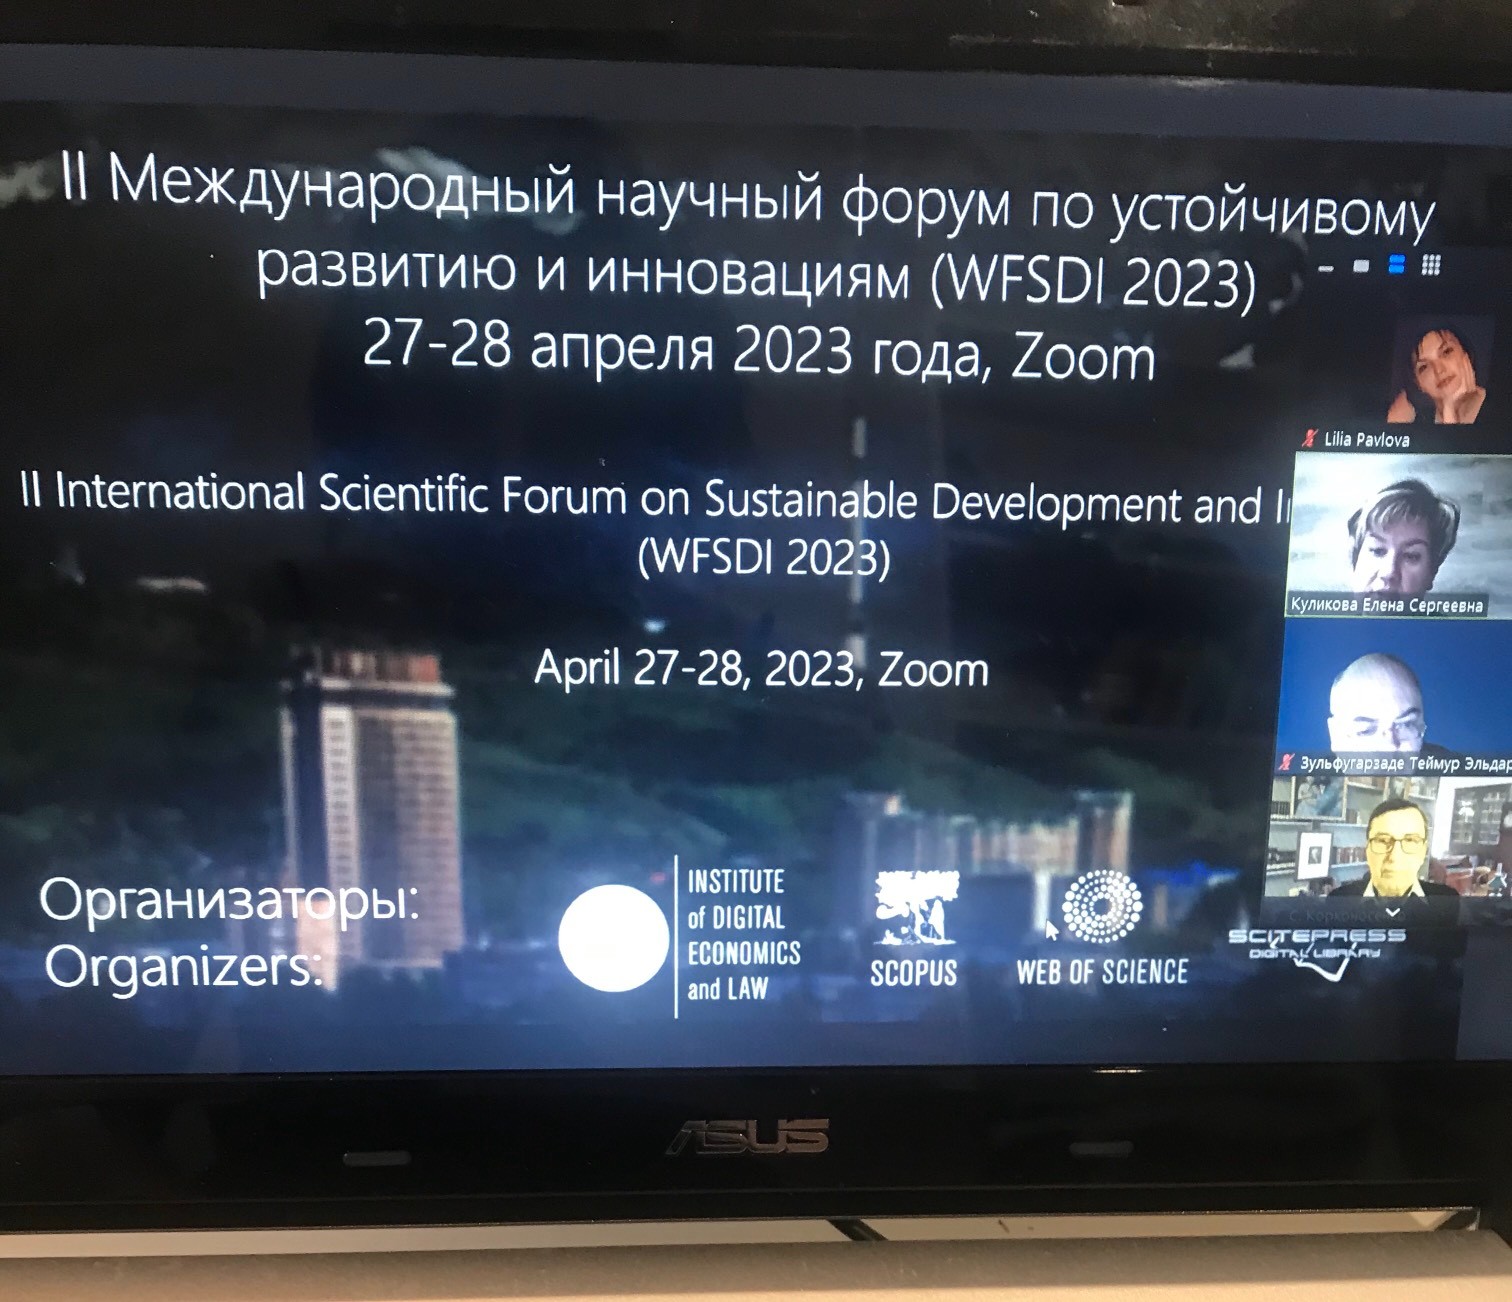 II Международный научный форум по устойчивому развитию и инновациям (WFSDI 2023) ,II Международный научный форум по устойчивому развитию и инновациям (WFSDI 2023)